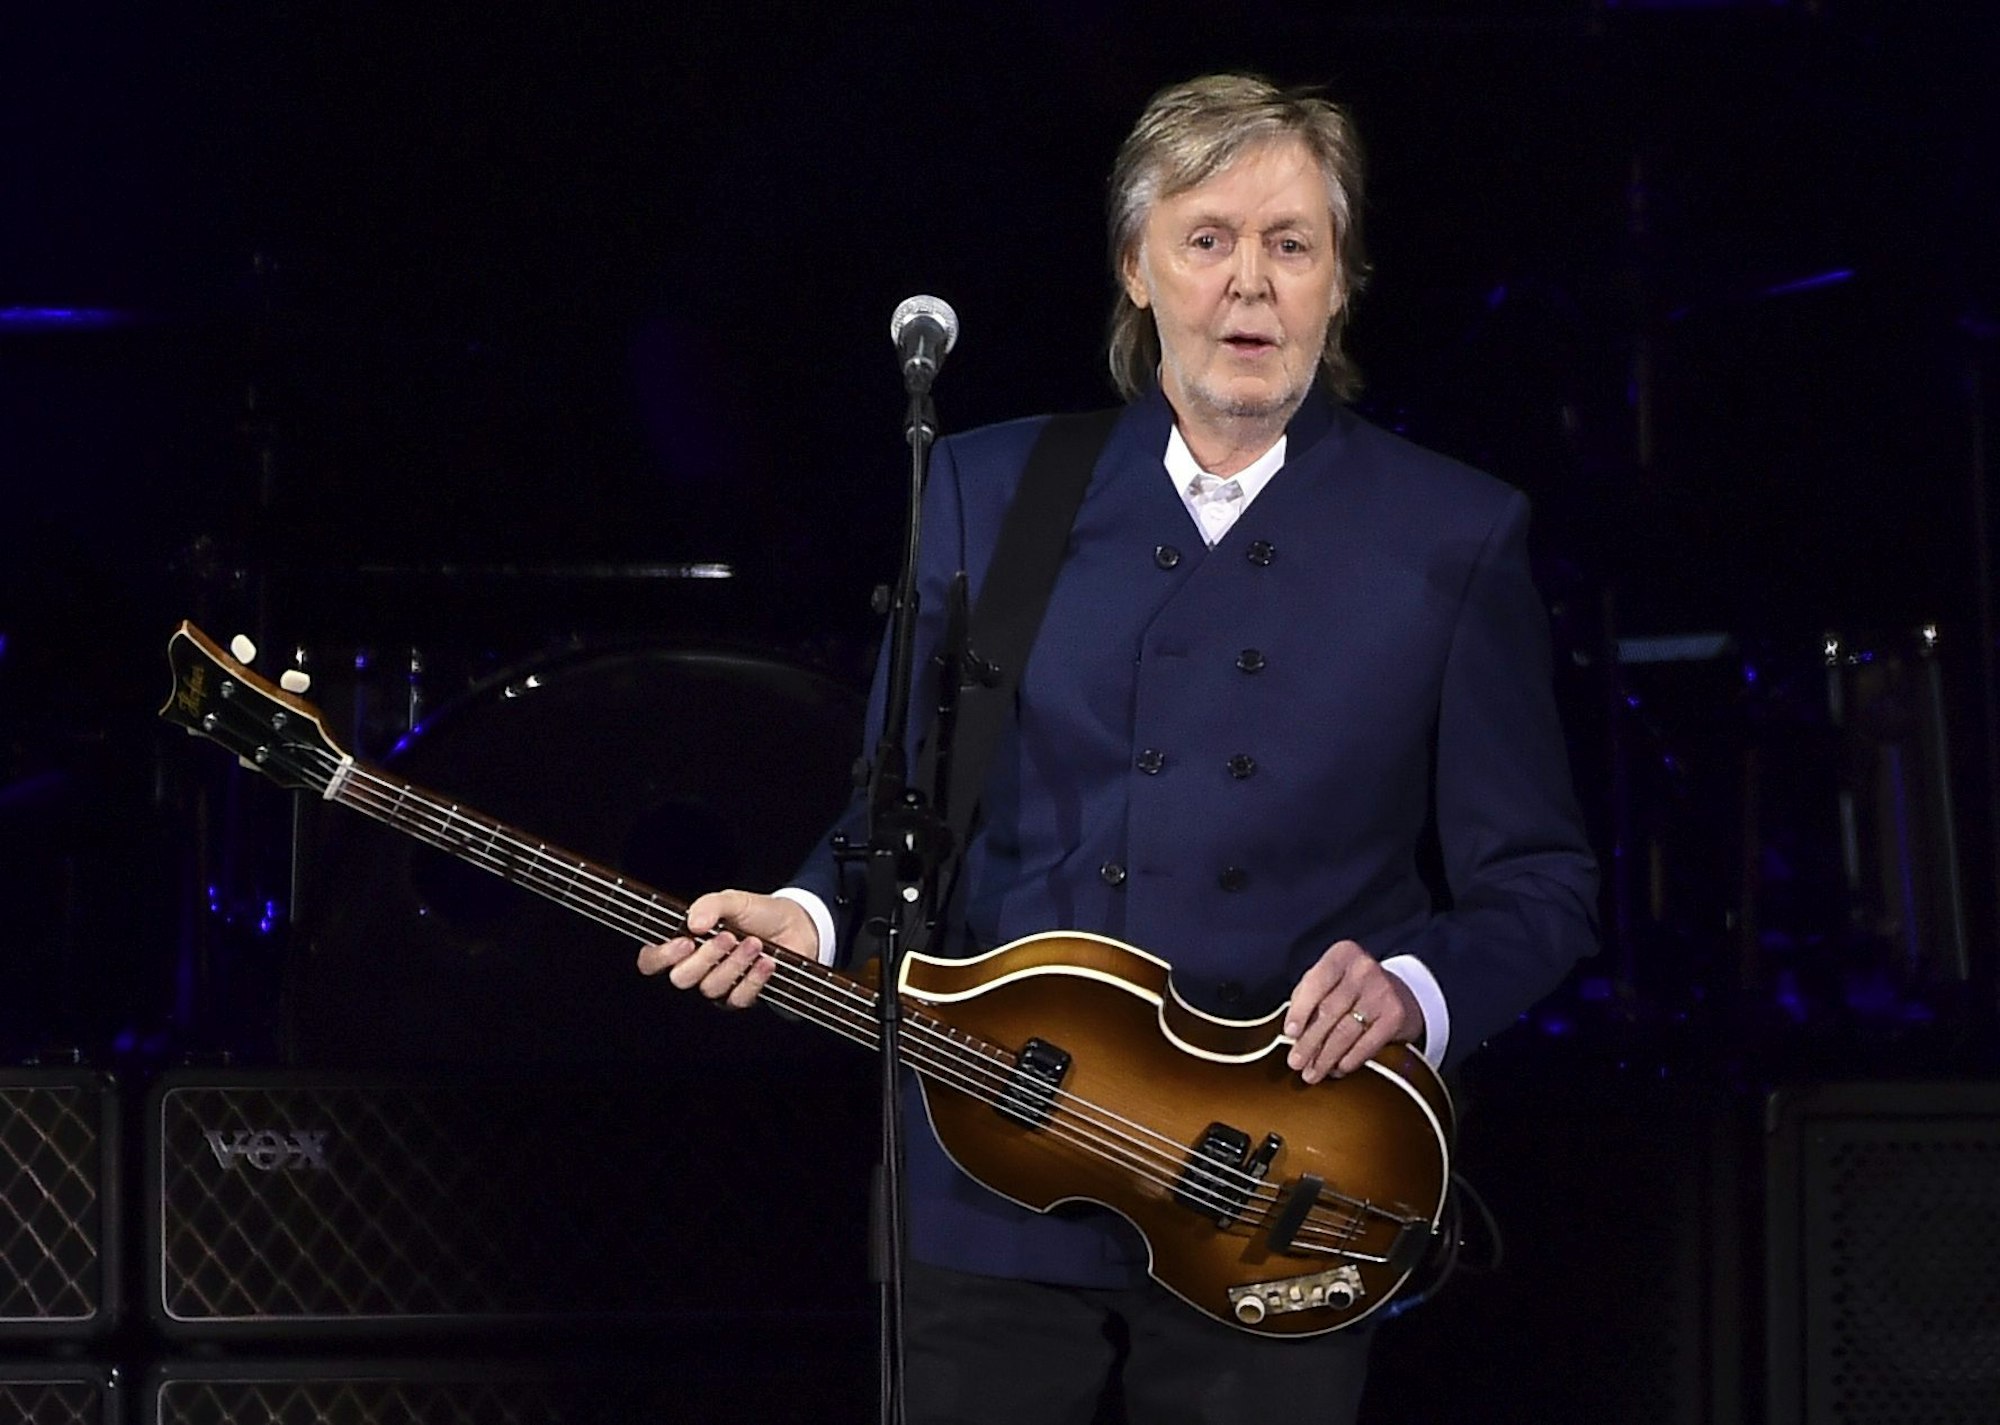 Paul McCartney auf der Bühne